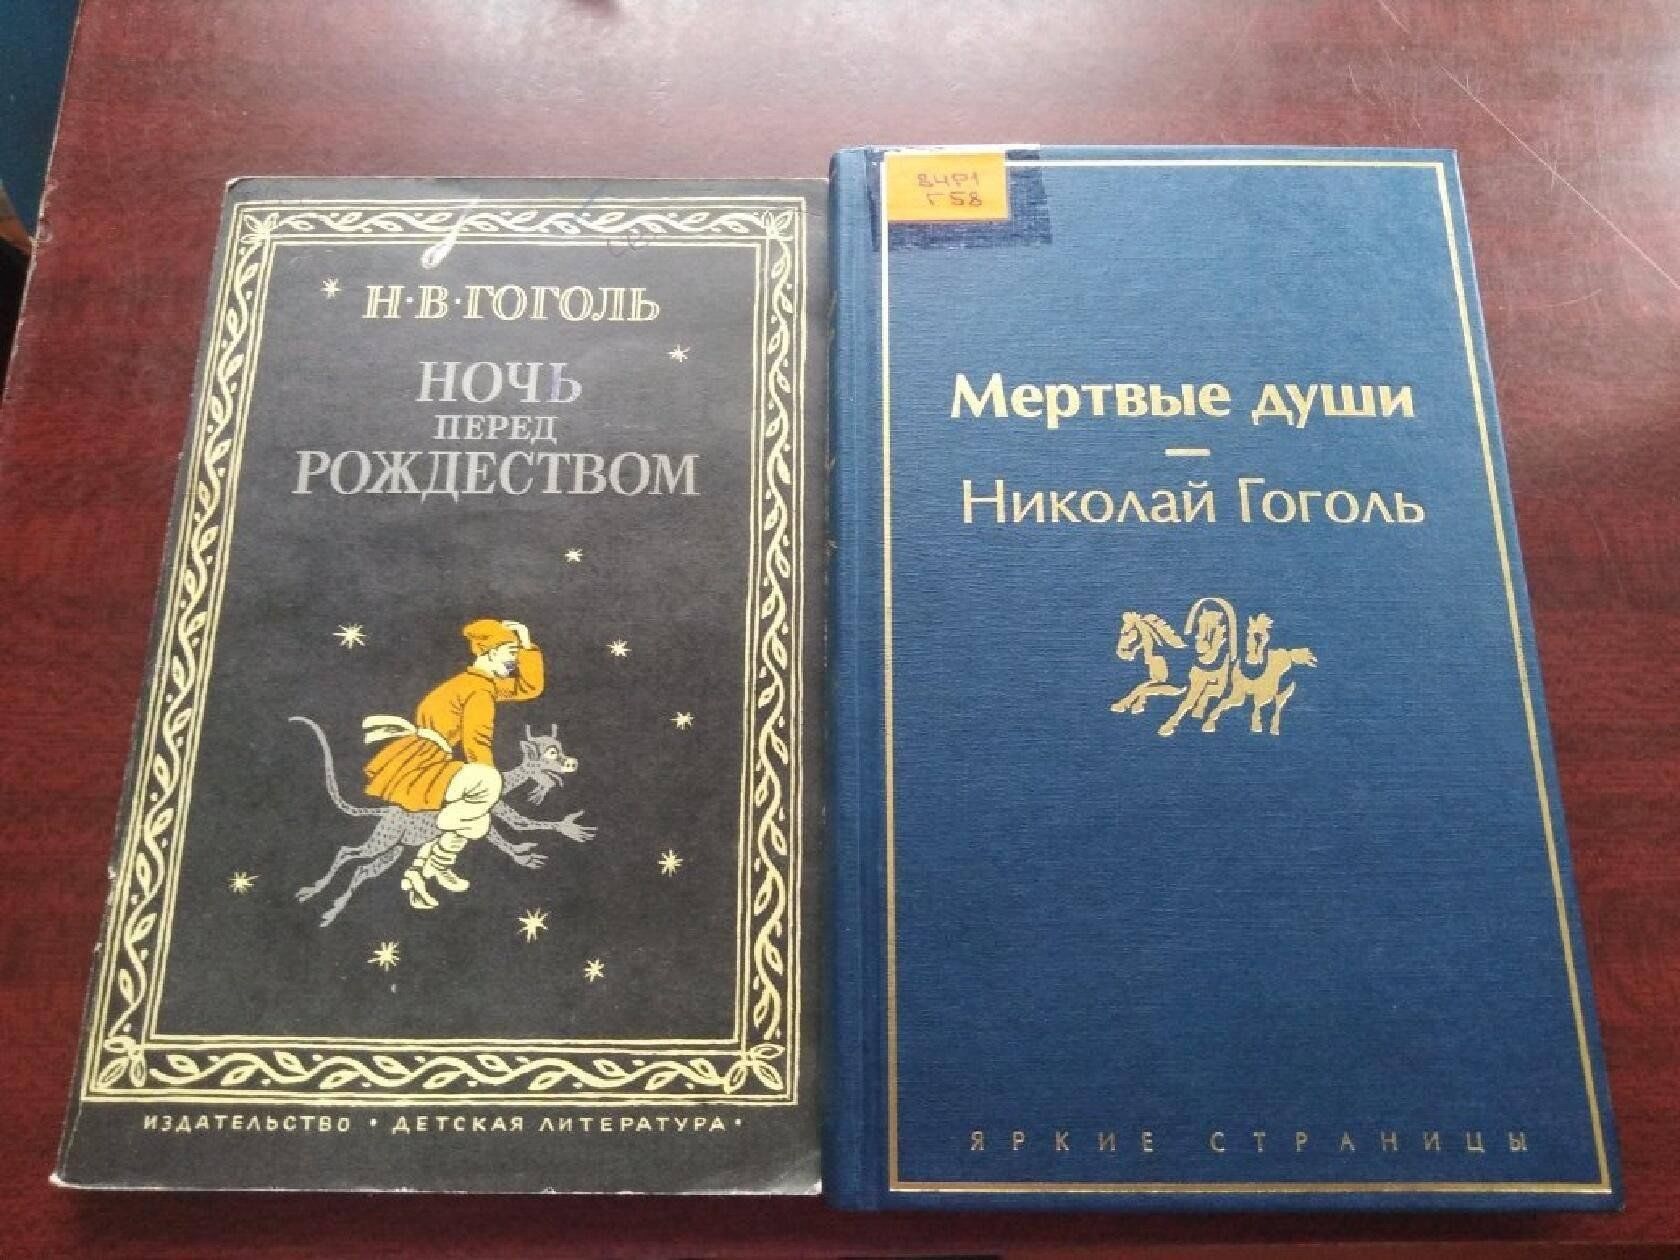 Выставка книг Гоголя. Книжная выставка Гоголь в библиотеке. Книжная выставка «Гоголь – это целая эпоха».